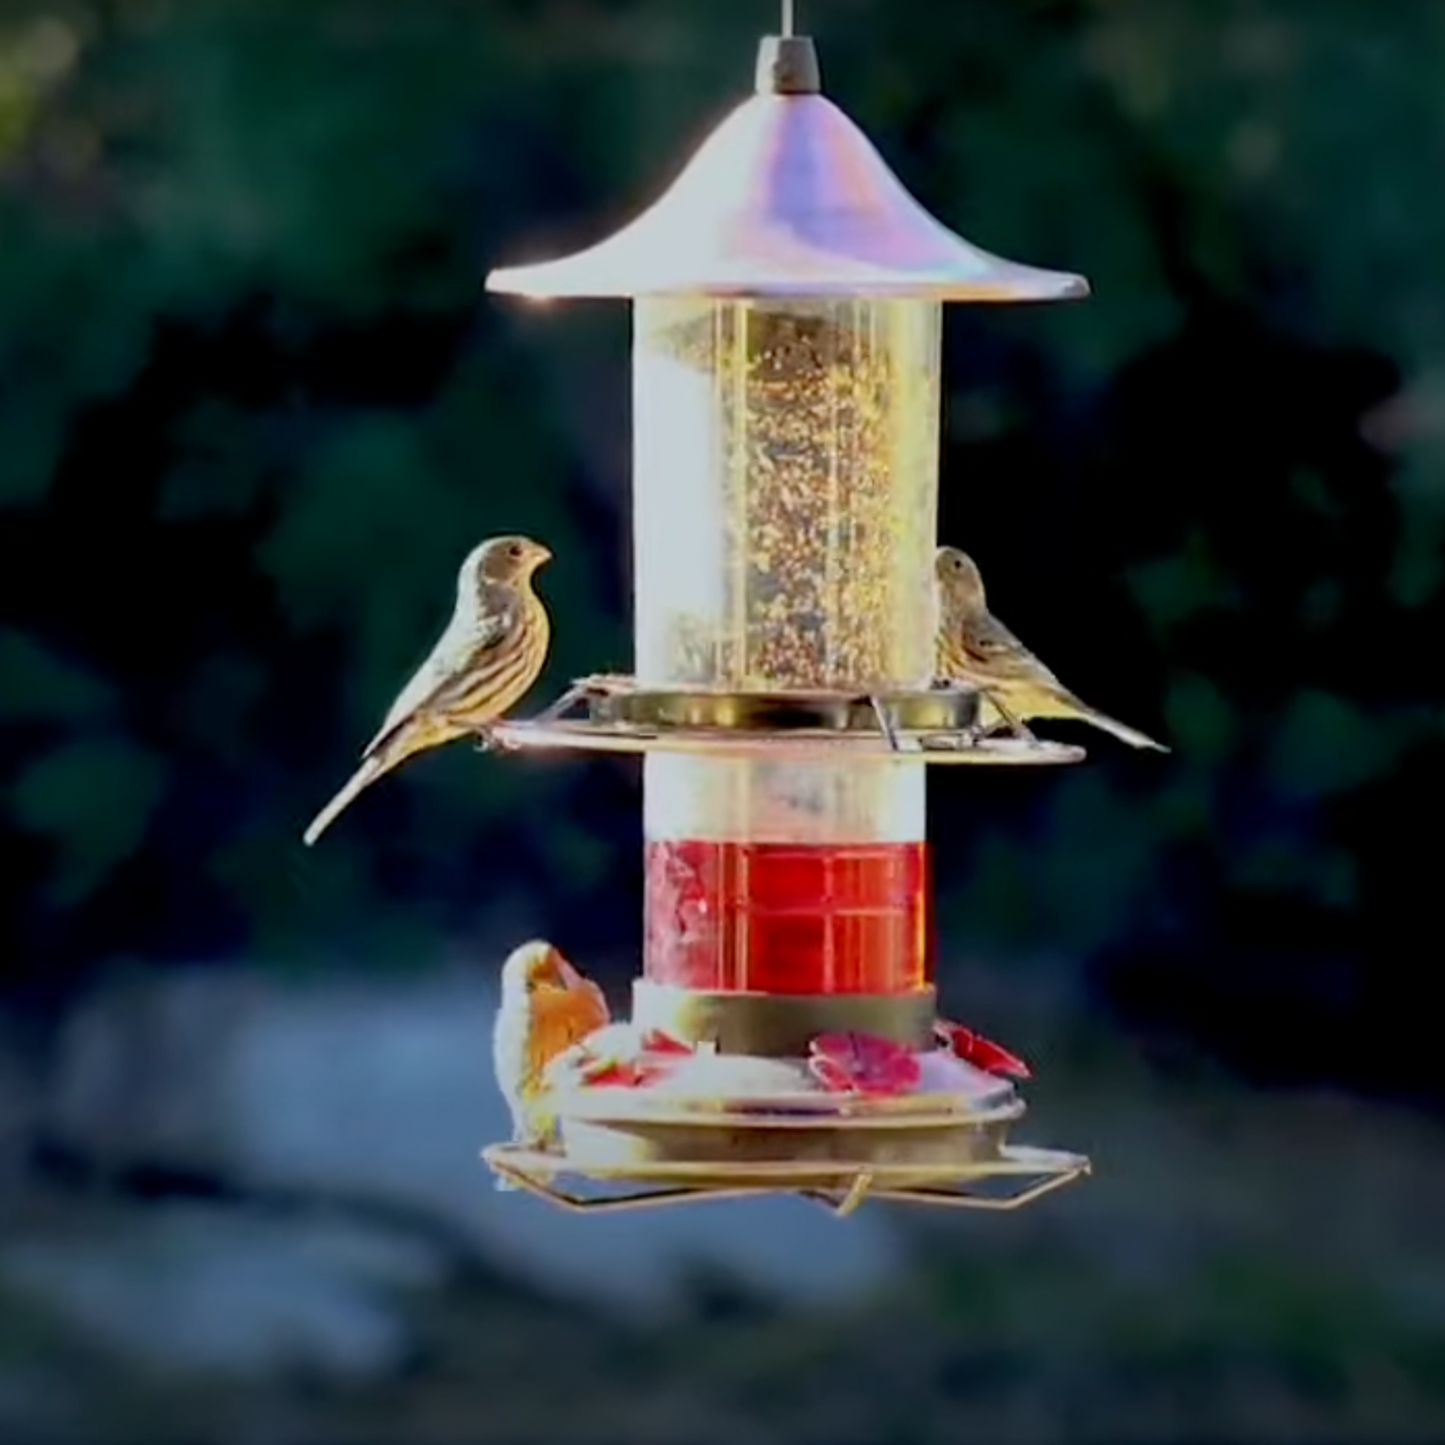 2-in-1 Hummingbird & Bird Seed Feeder